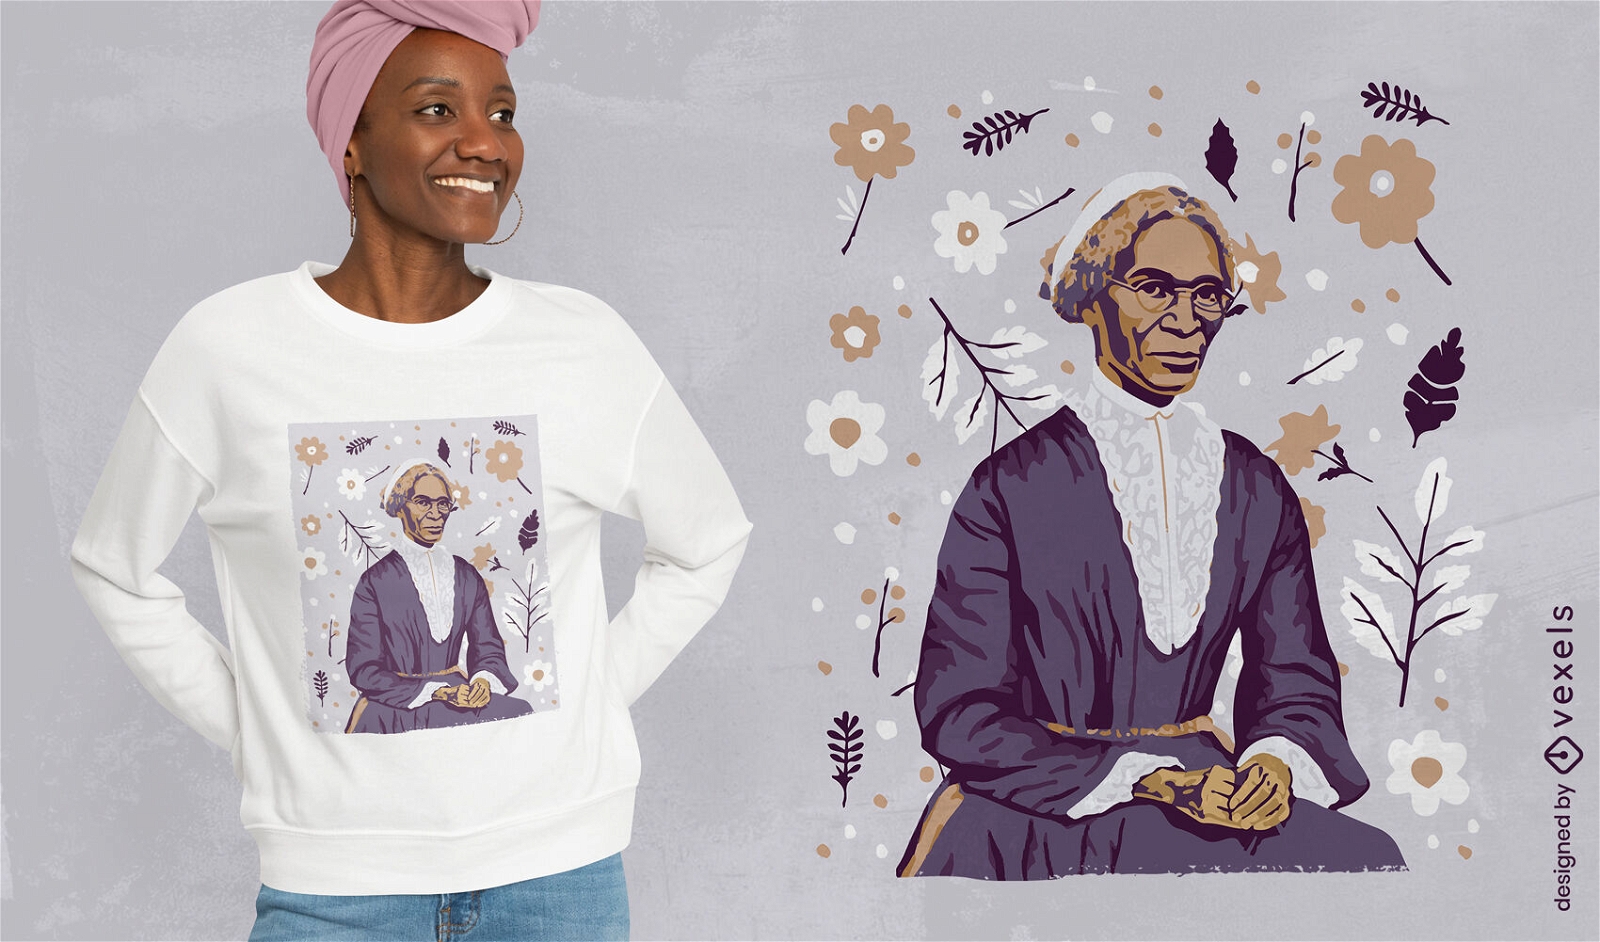 Dise?o de camiseta inspiradora de Sojourner Truth.